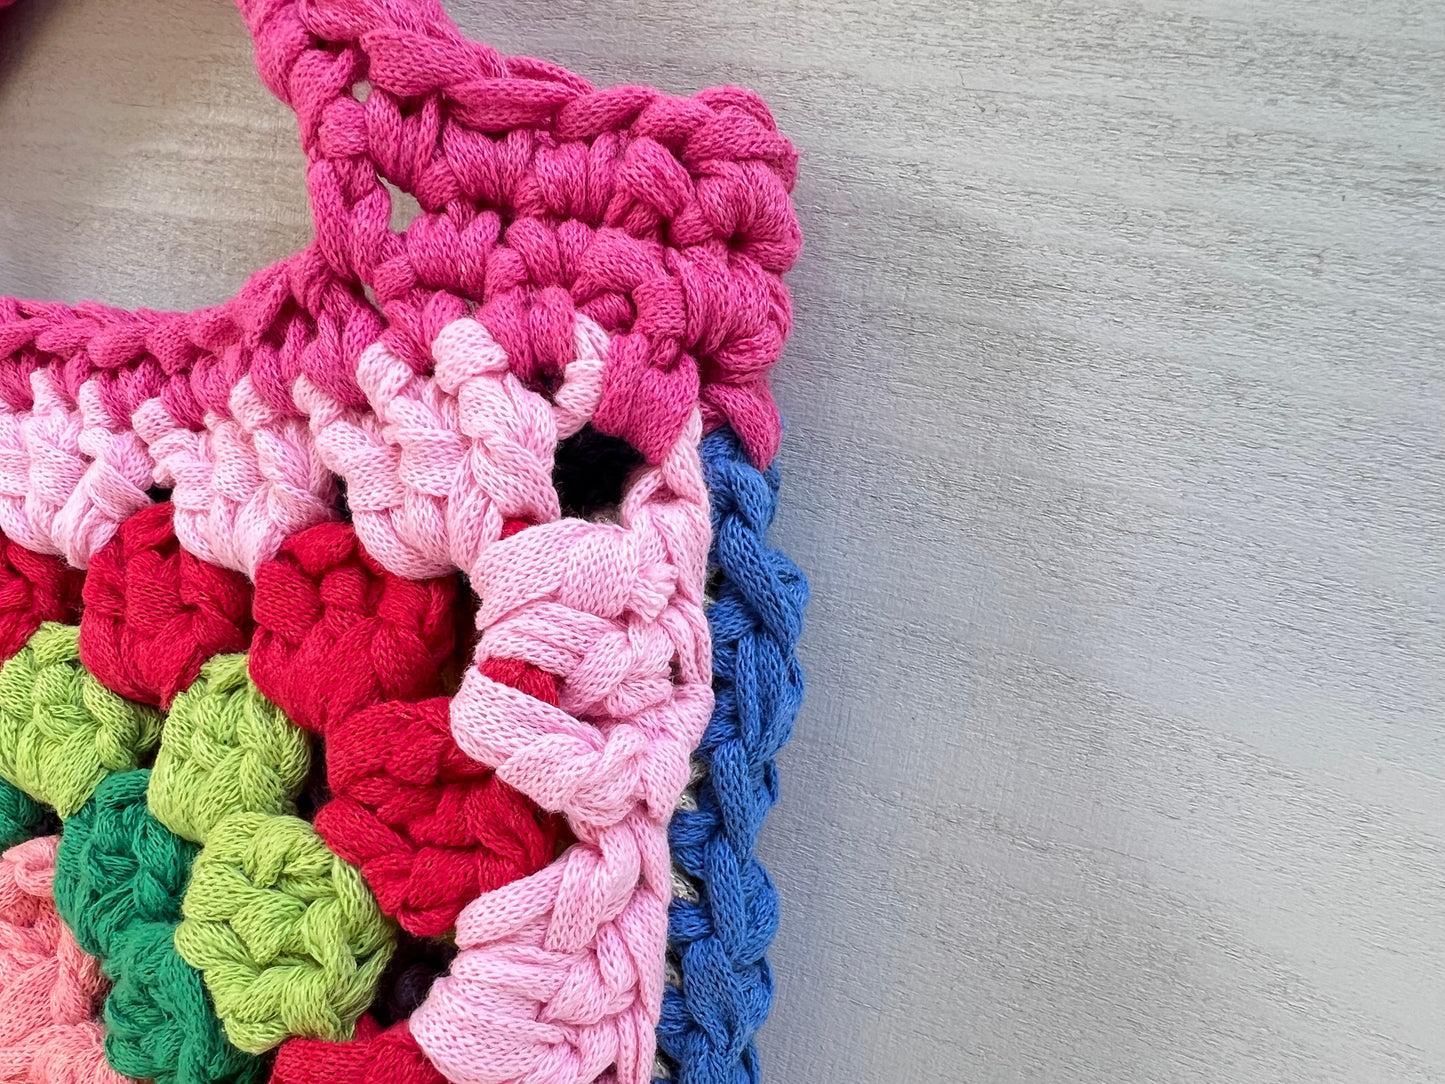 Crocheted colourful granny square tote purse